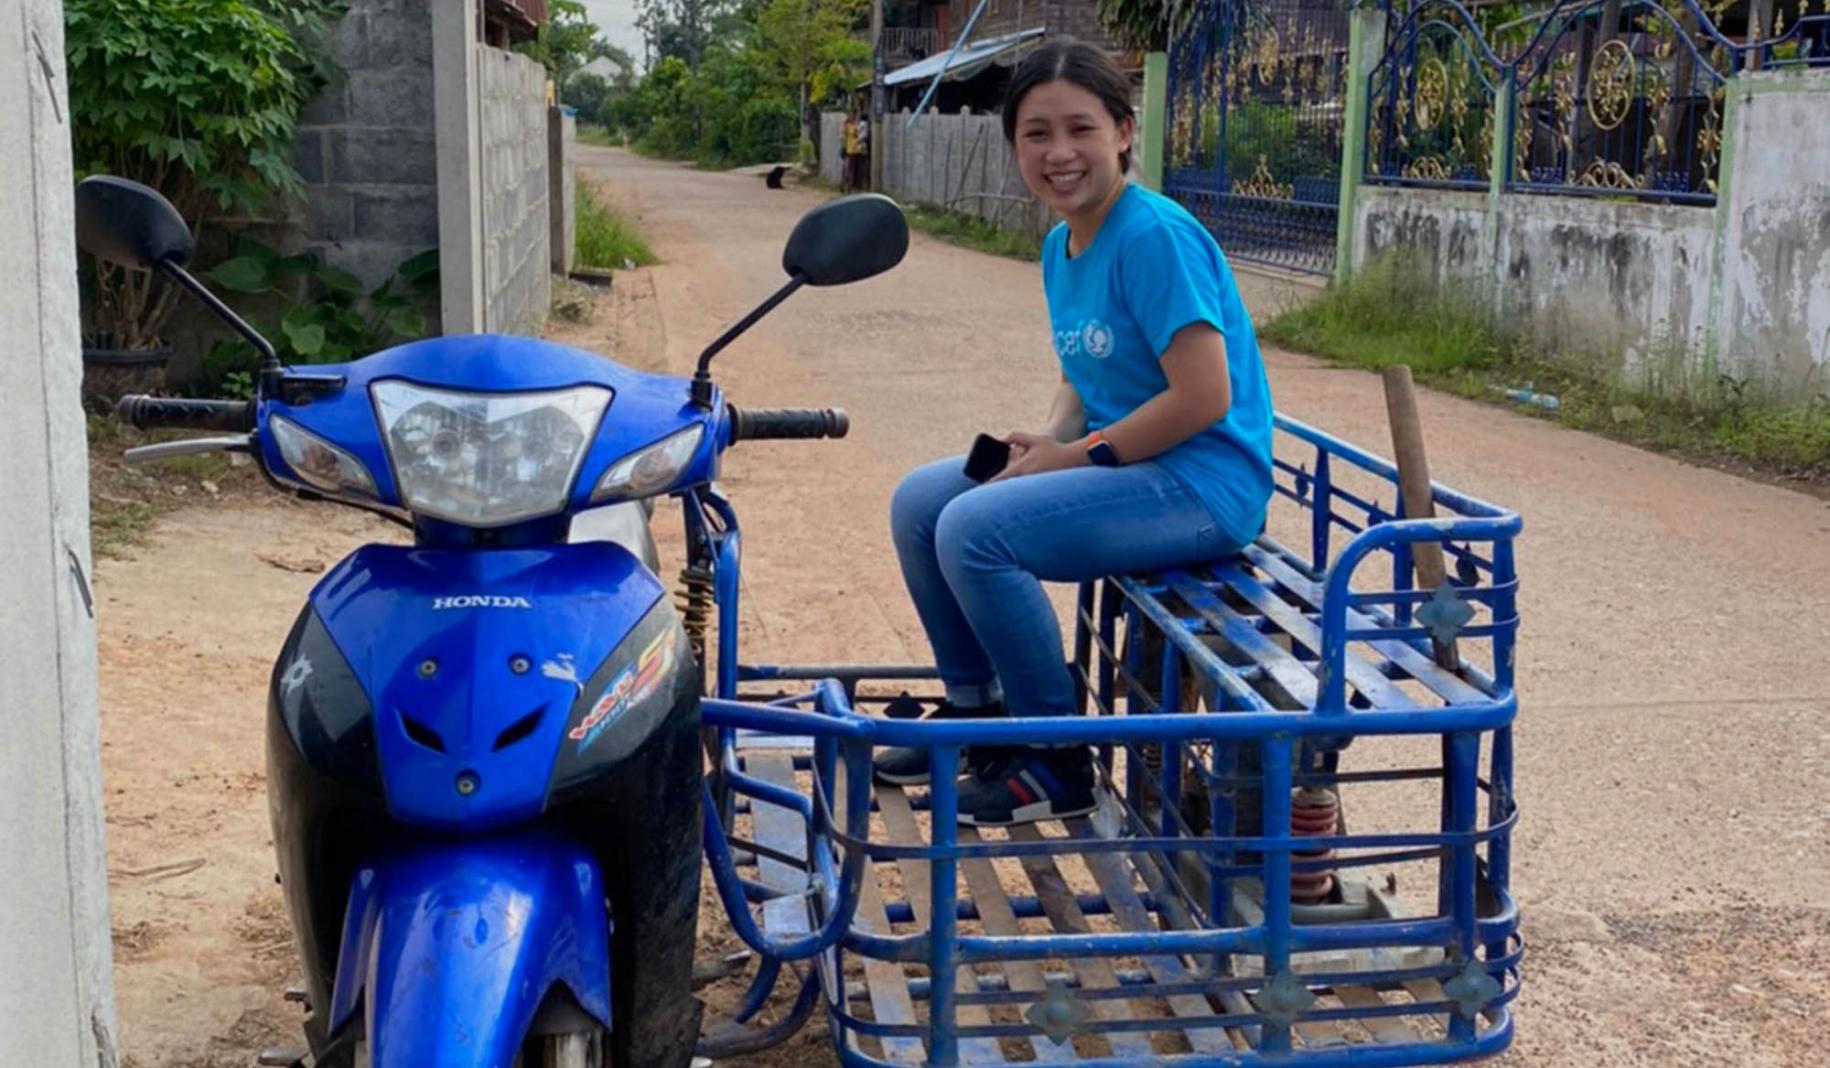 Une volontaire des Nations Unies vêtue d'un jean bleu et d'un t-shirt bleu portant le logo de l'UNICEF est assise dans le "side-cart" d'une moto bleue stationnée dans un chemin de terre et sourit à la caméra.